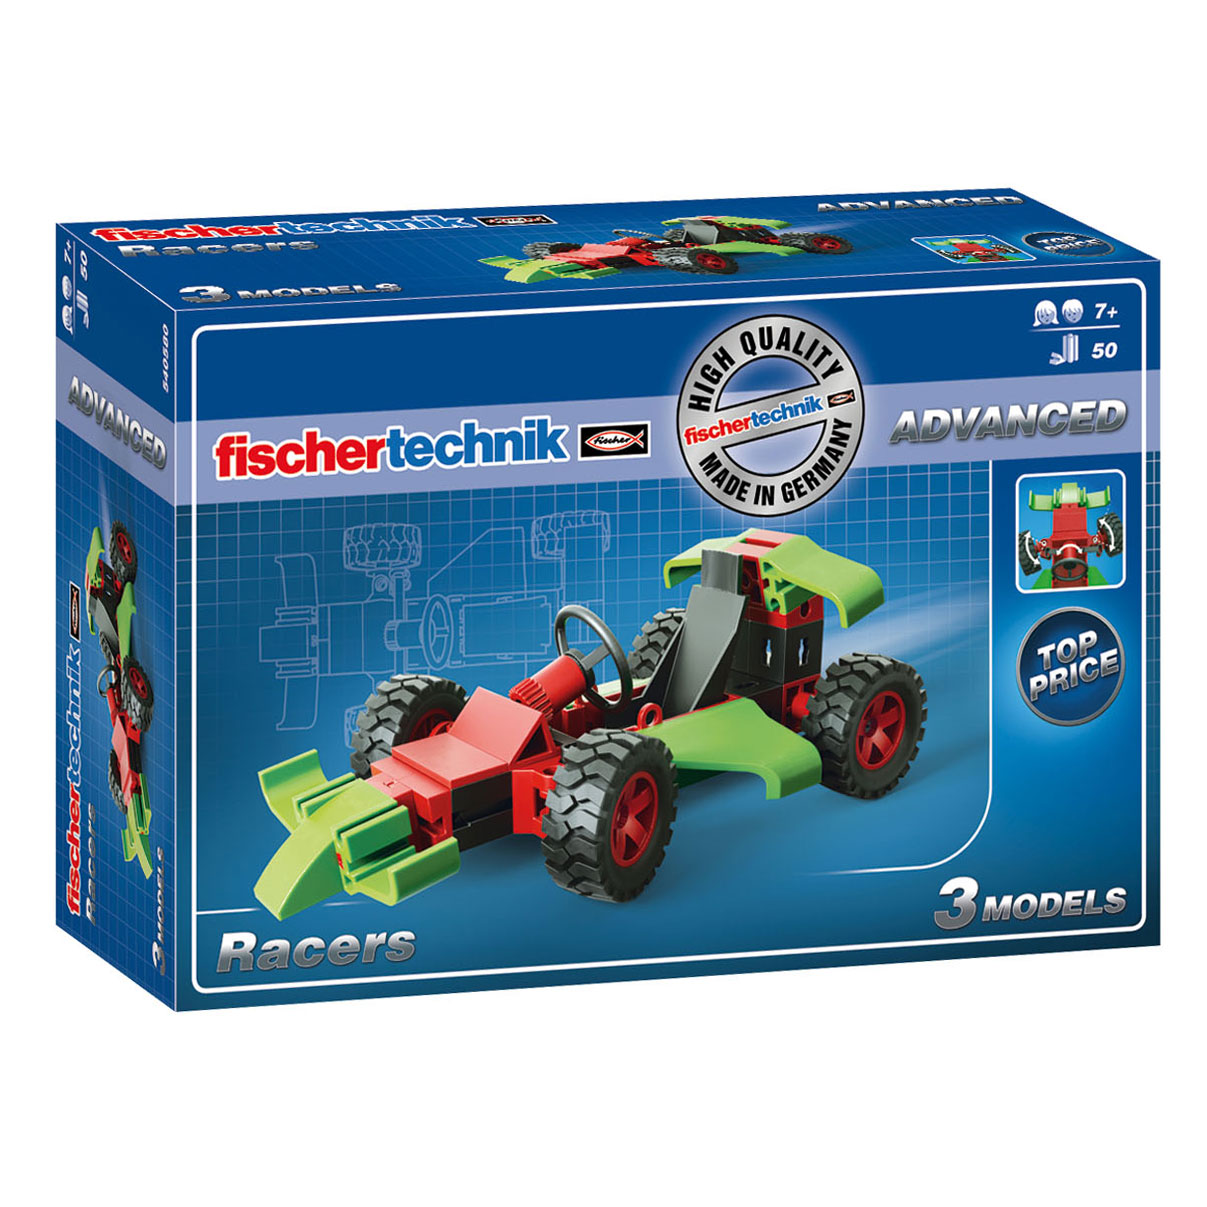 Fischertechnik Advanced - Racevoertuigen